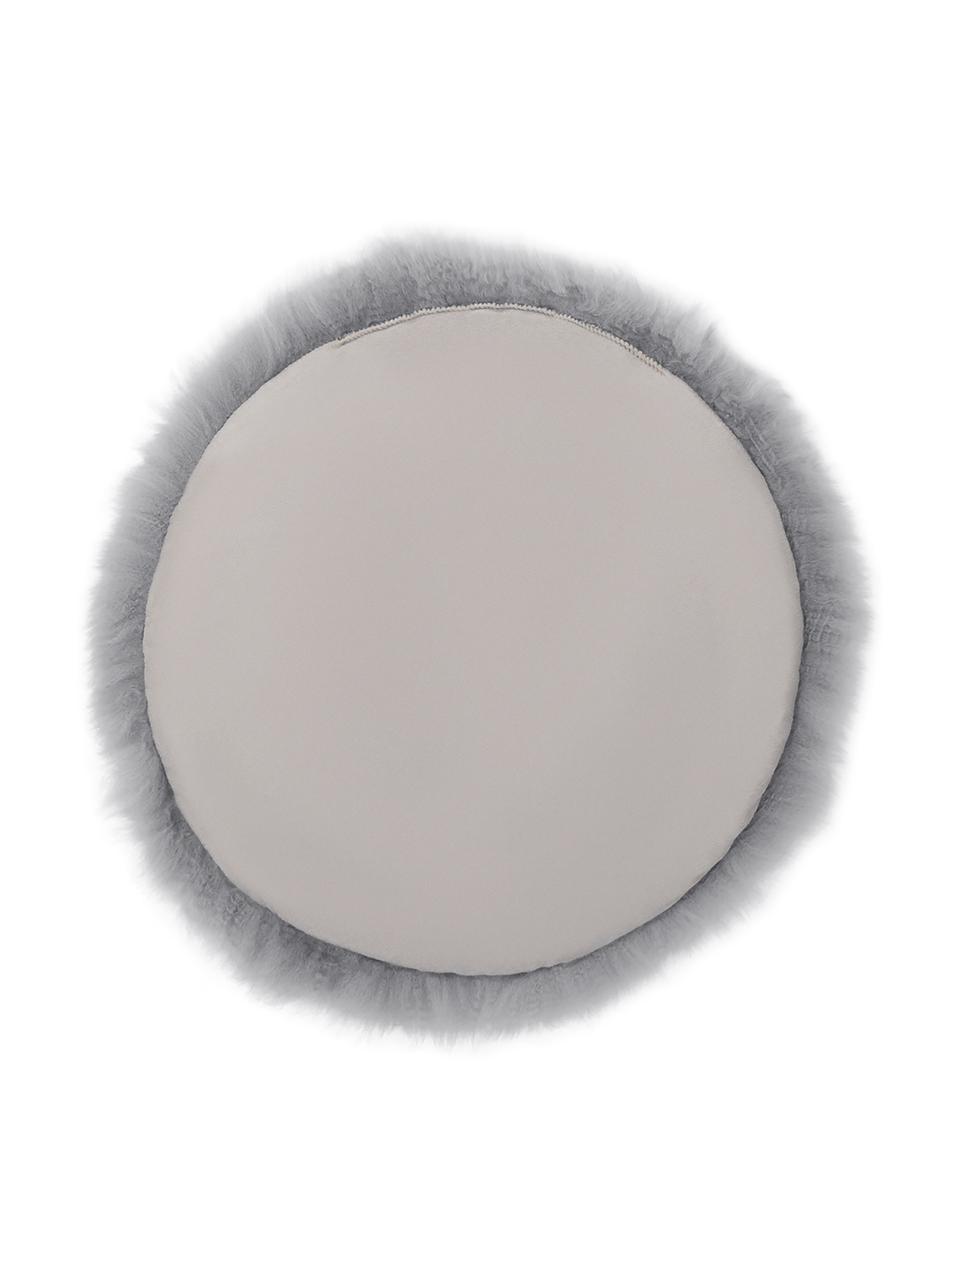 Galette de chaise ronde peau de mouton lisse Oslo, Gris clair, Ø 37 cm